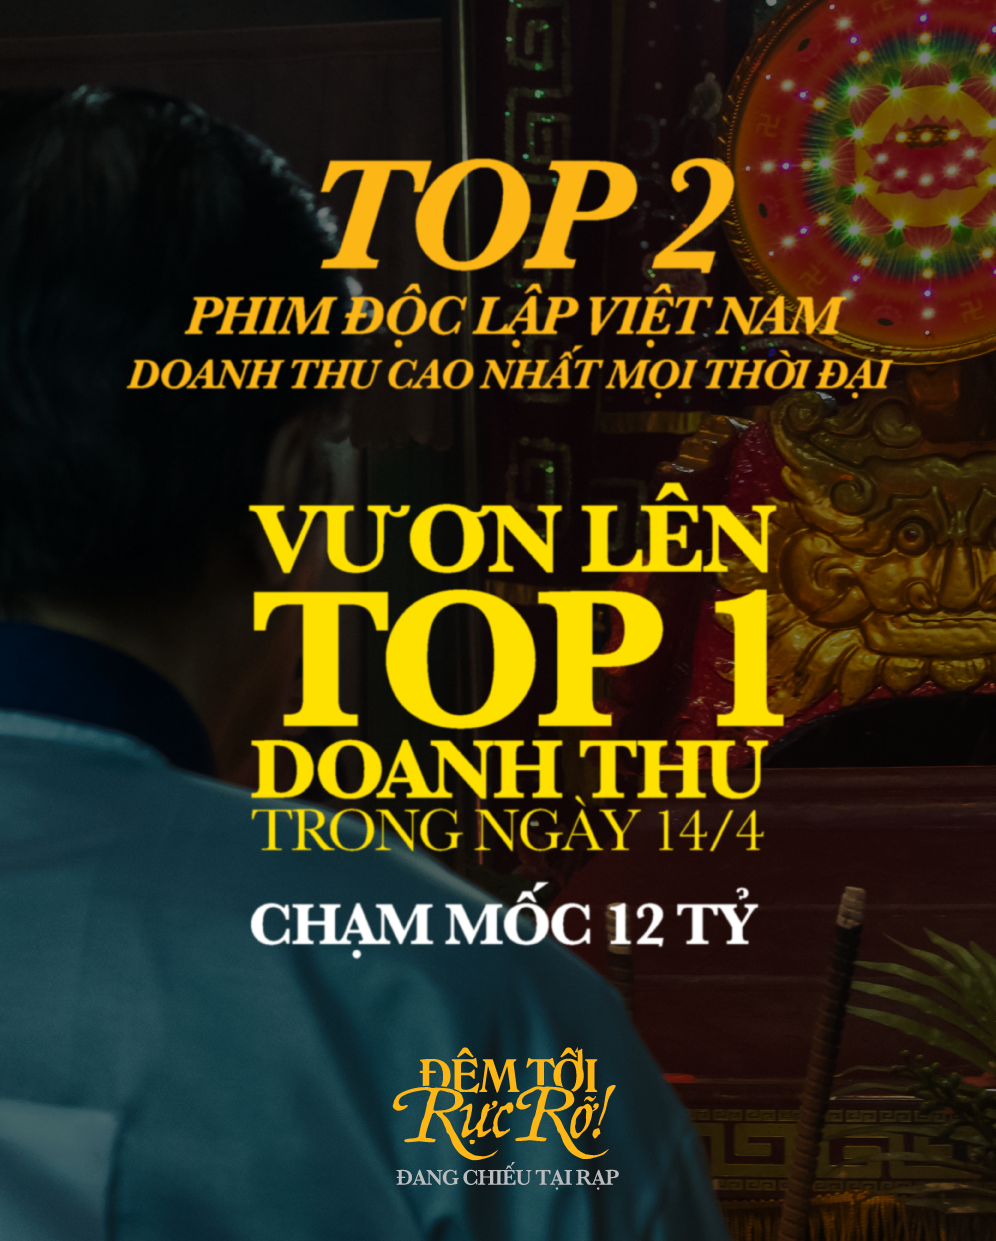 'Đêm tối rực rỡ!' thu 12 tỷ đồng, trở thành phim độc lập Việt Nam có doanh thu cao thứ hai mọi thời đại